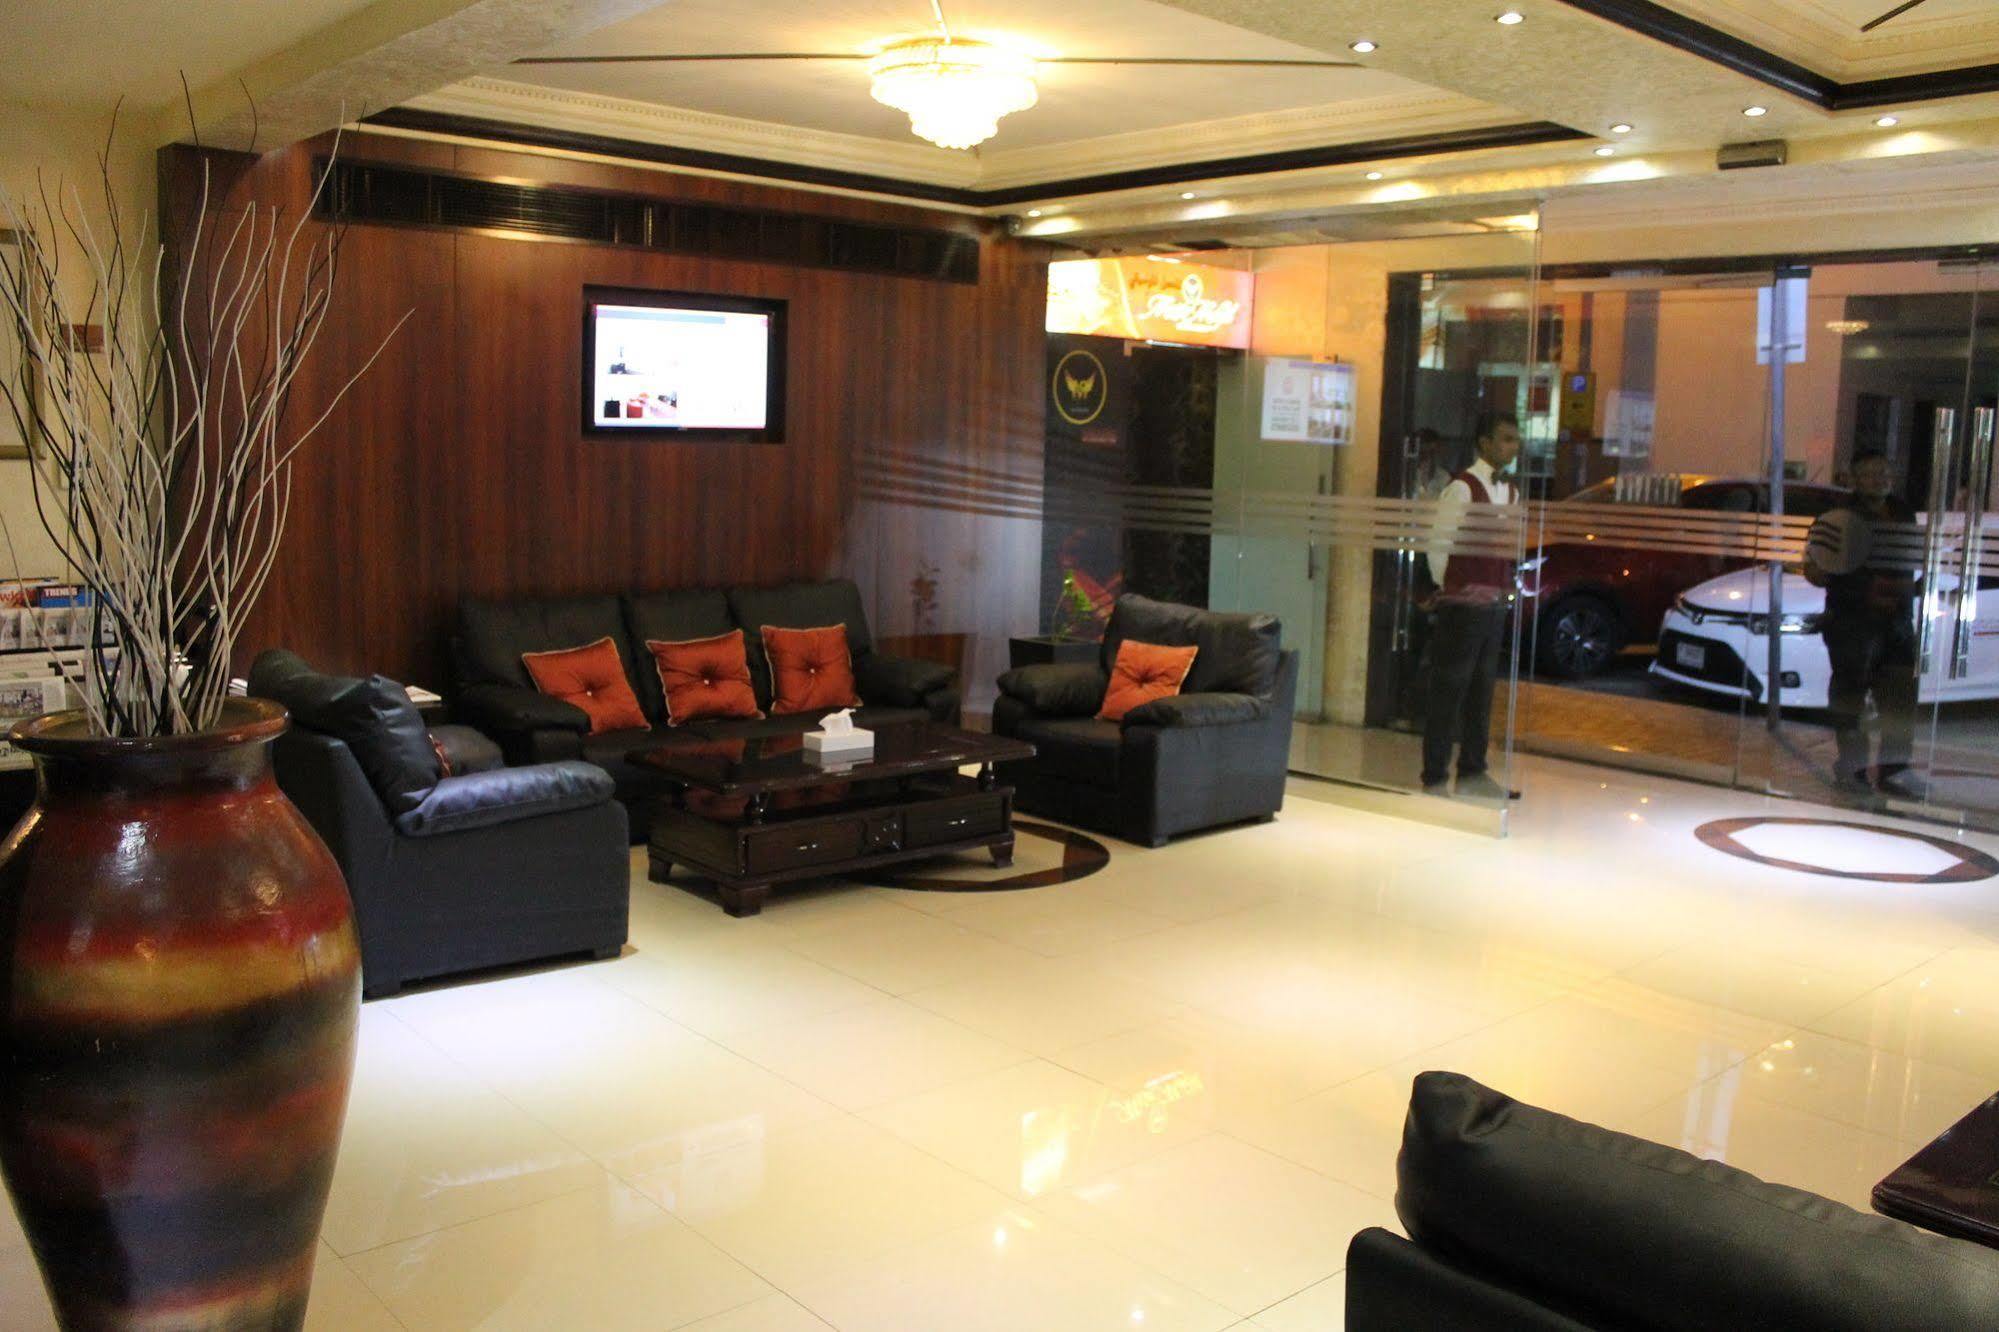 Fortune Karama Hotel Dubaï Extérieur photo